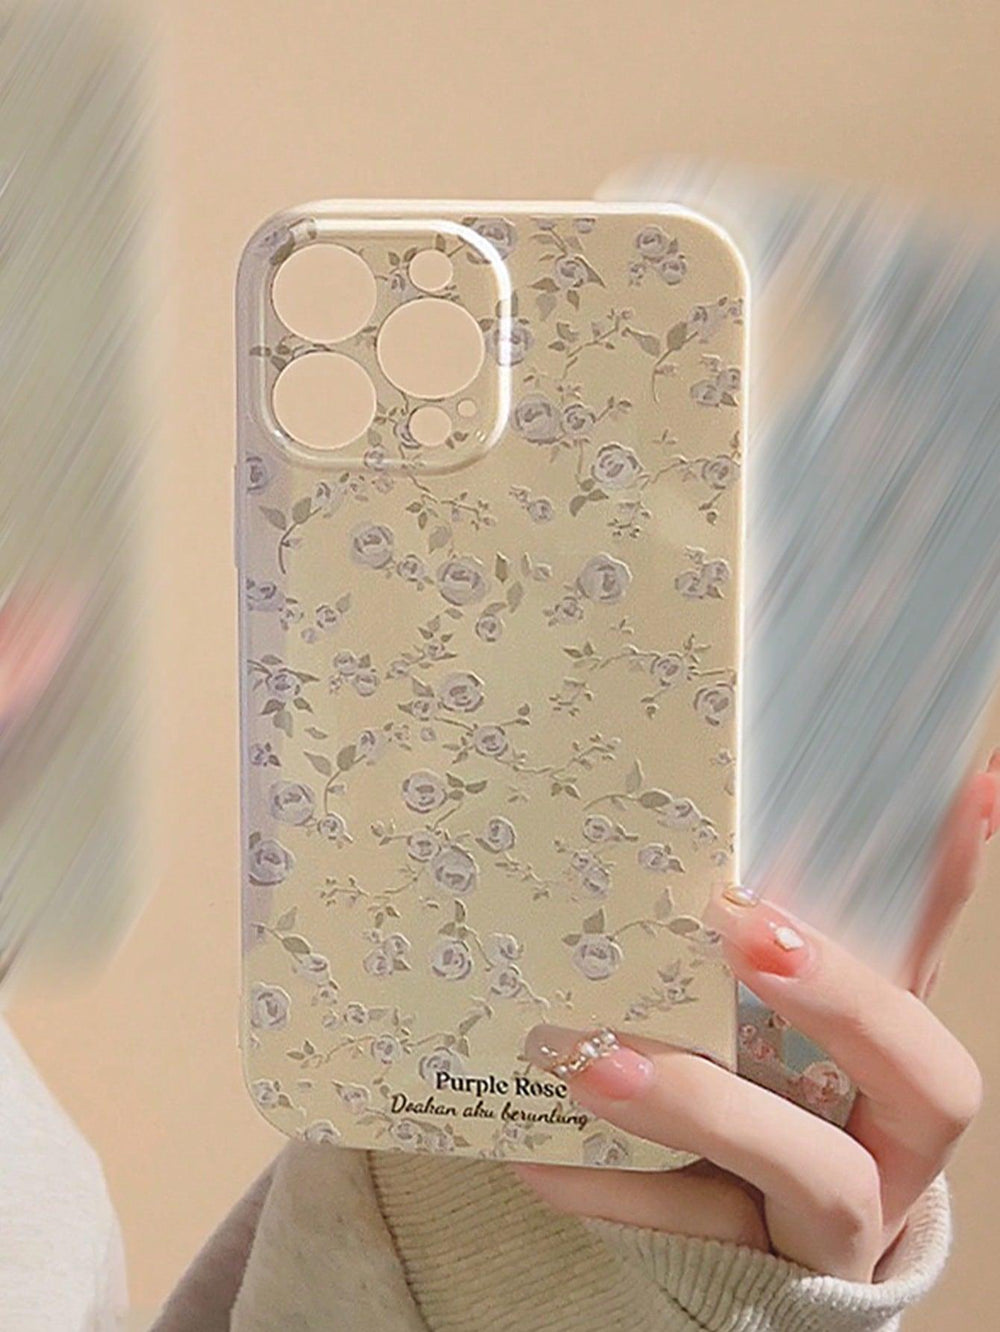 Petals Galore Premium Phone Case - Brand My Case